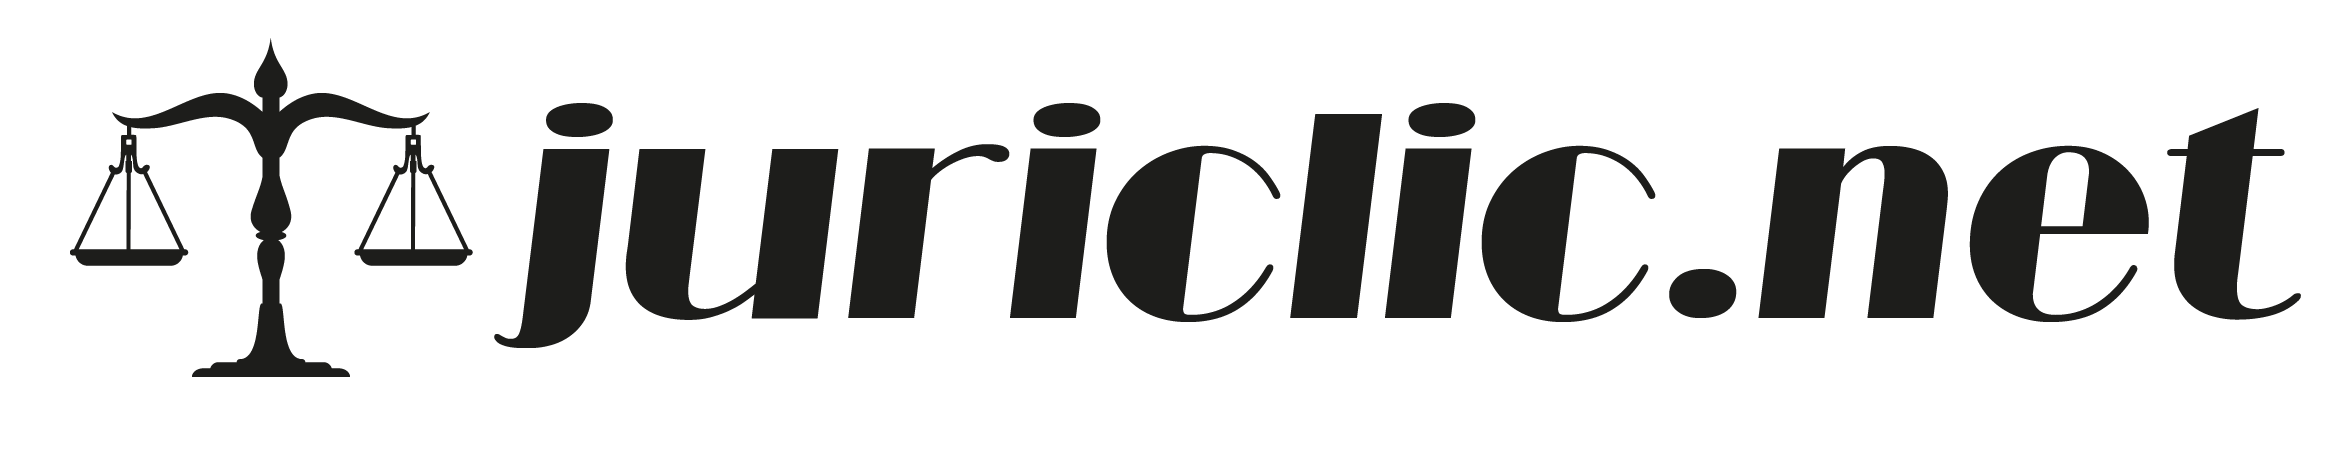 Juriclic.net